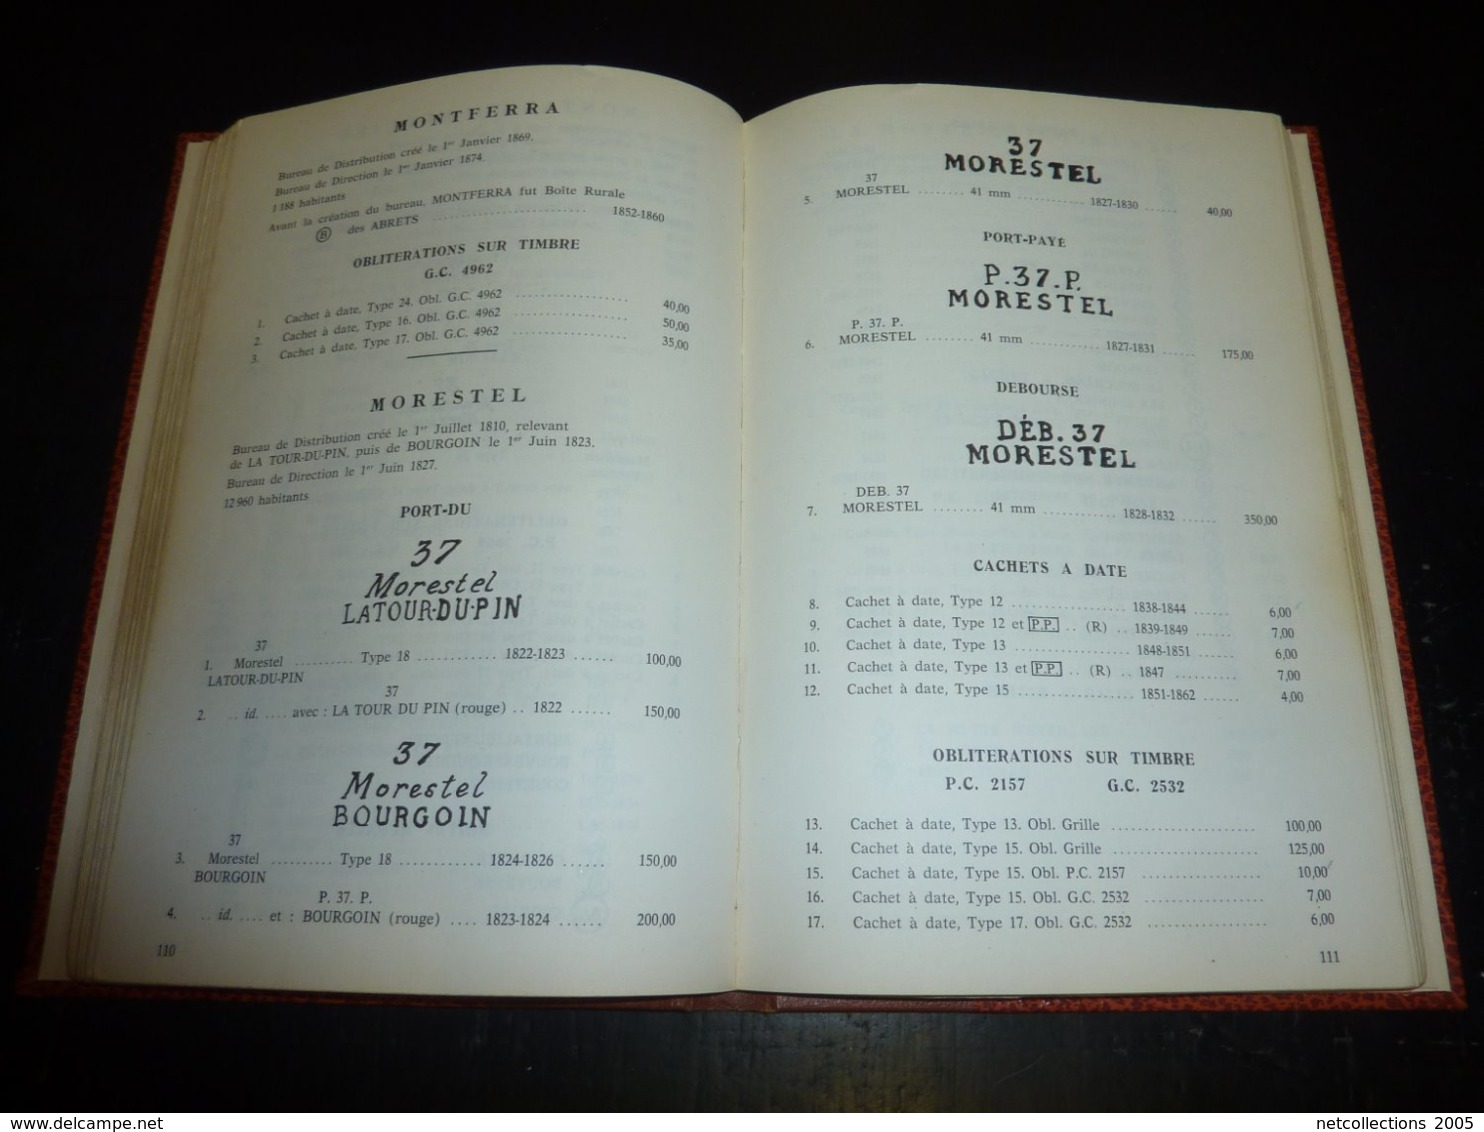 MARQUES POSTALES ET OBLITERATIONS DE L'ISERE DES ORIGINES A 1876 N°37 - " 93 Bureaux "  - PHILATELIE STAMPS BOOK (C.B)